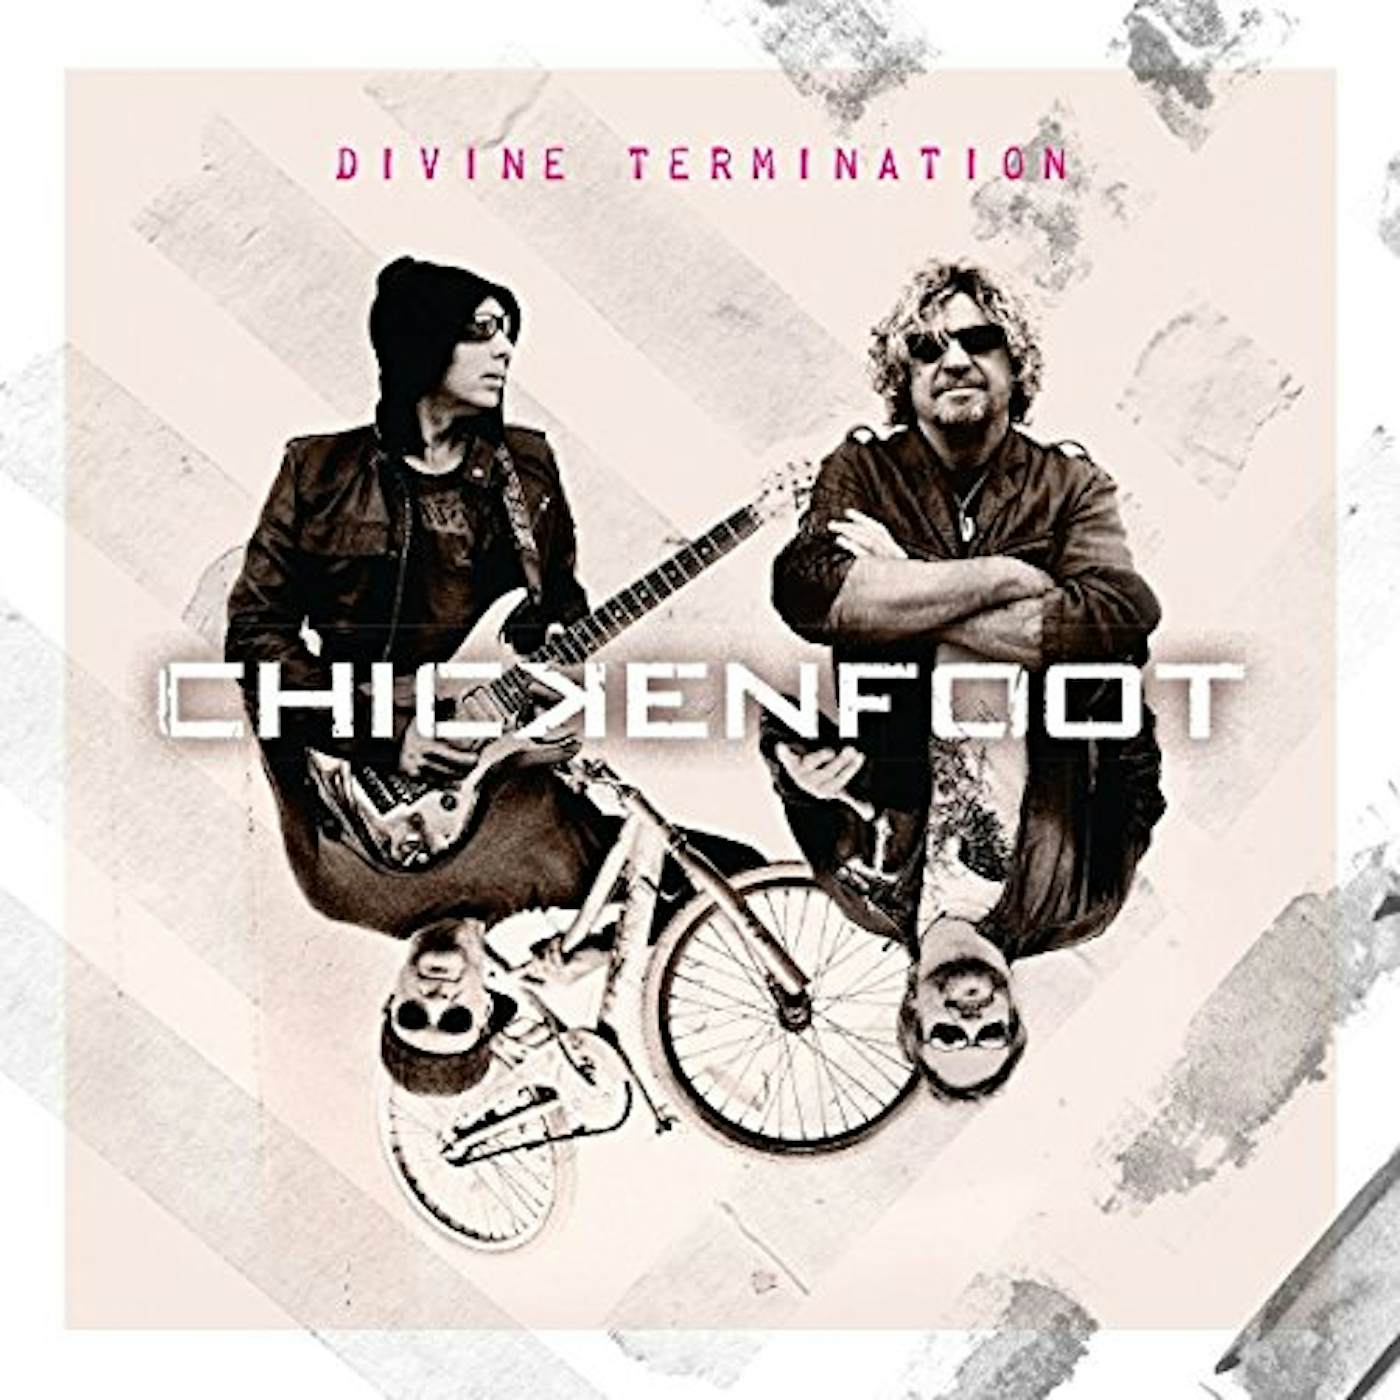 Chickenfoot Divine Termination Vinyl Record